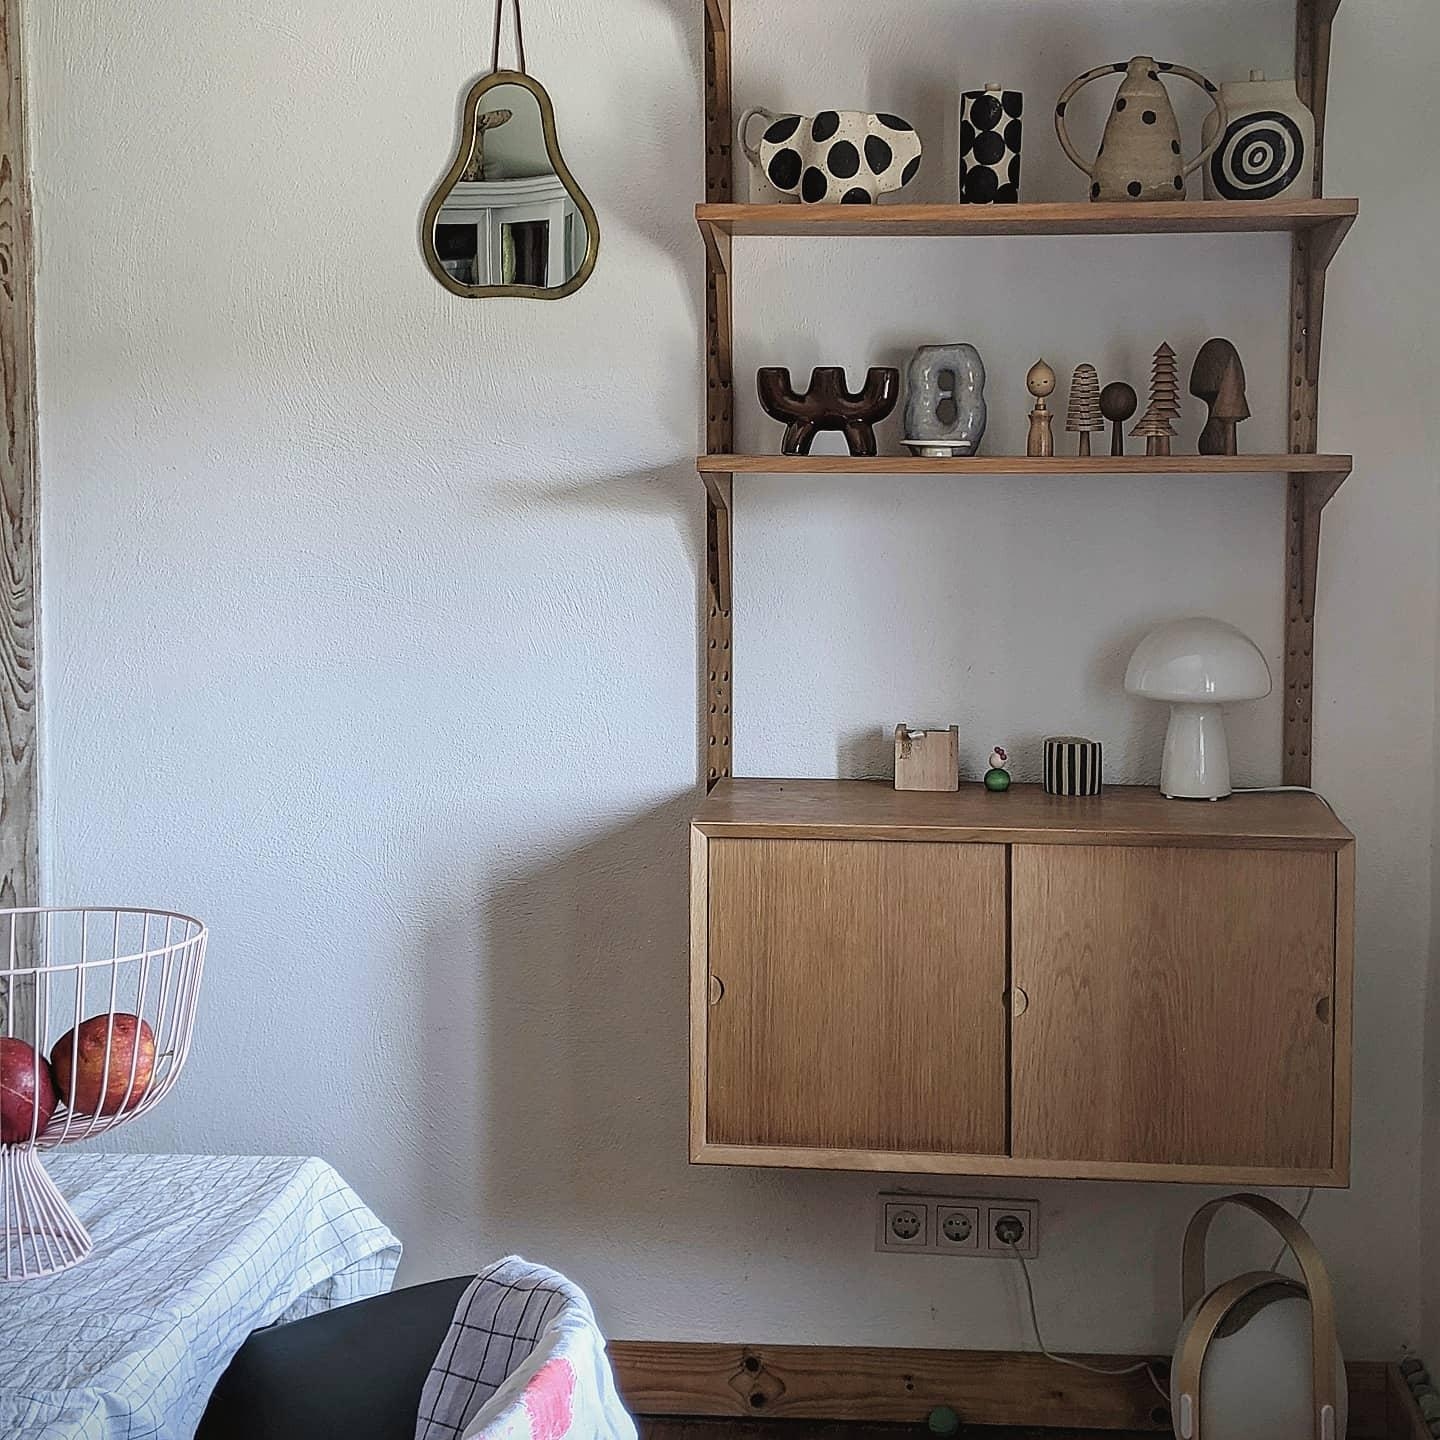 #Vasenmittwoch#vasenliebe#keramik #handmade#couchstyle #scandinavisch#vintage#homestory #decoration#decor#interior